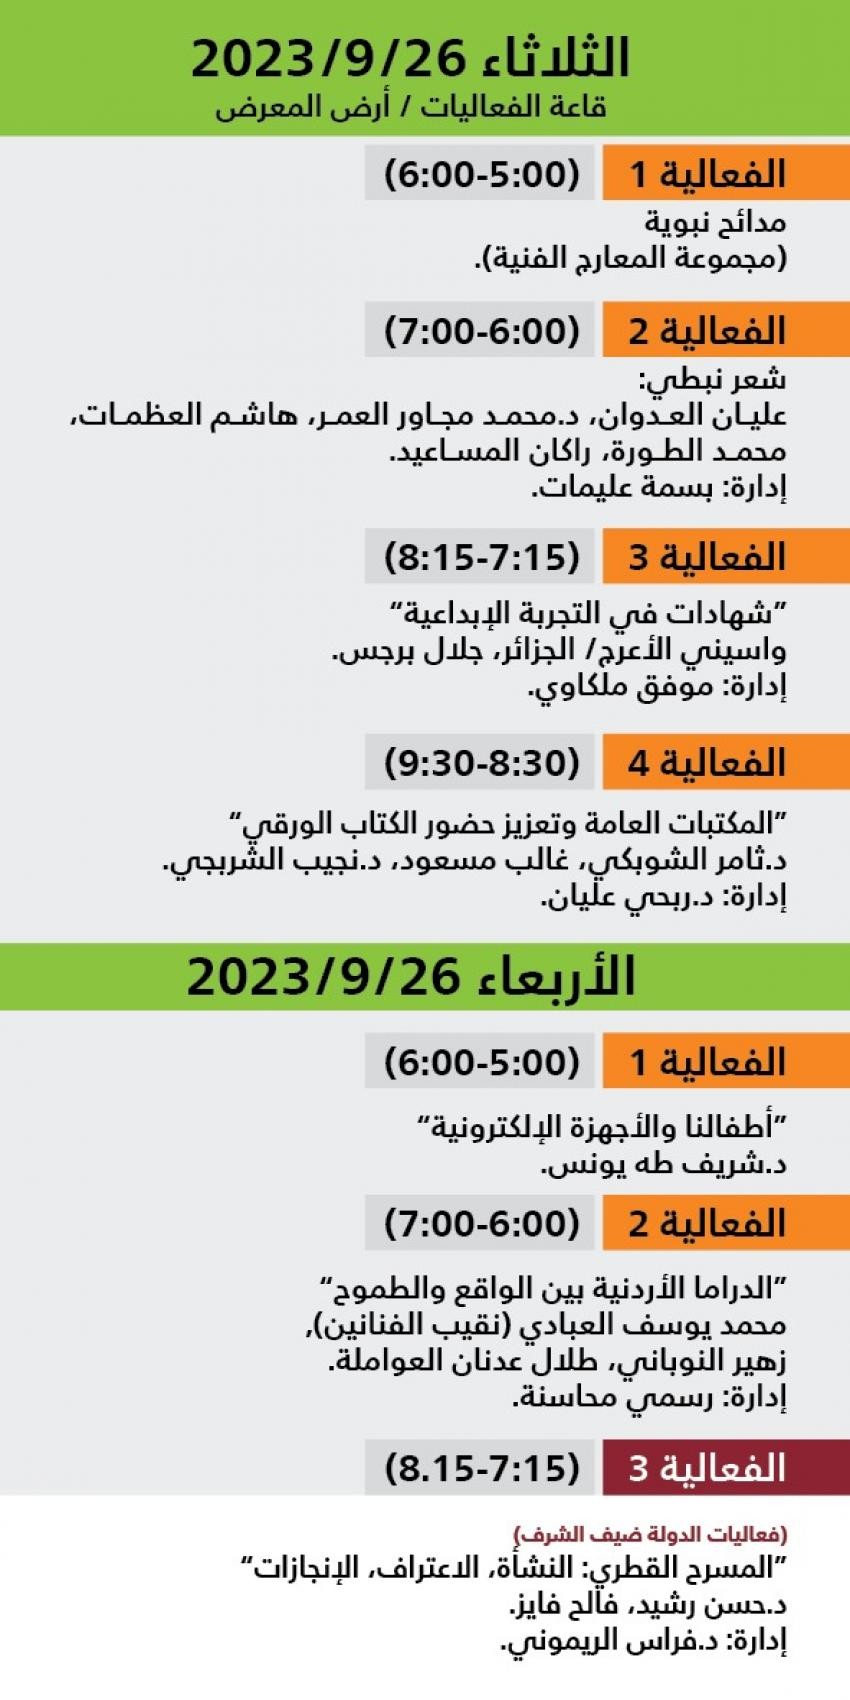 اليوم السادس والسابع فعاليات معرض عمان.jfif